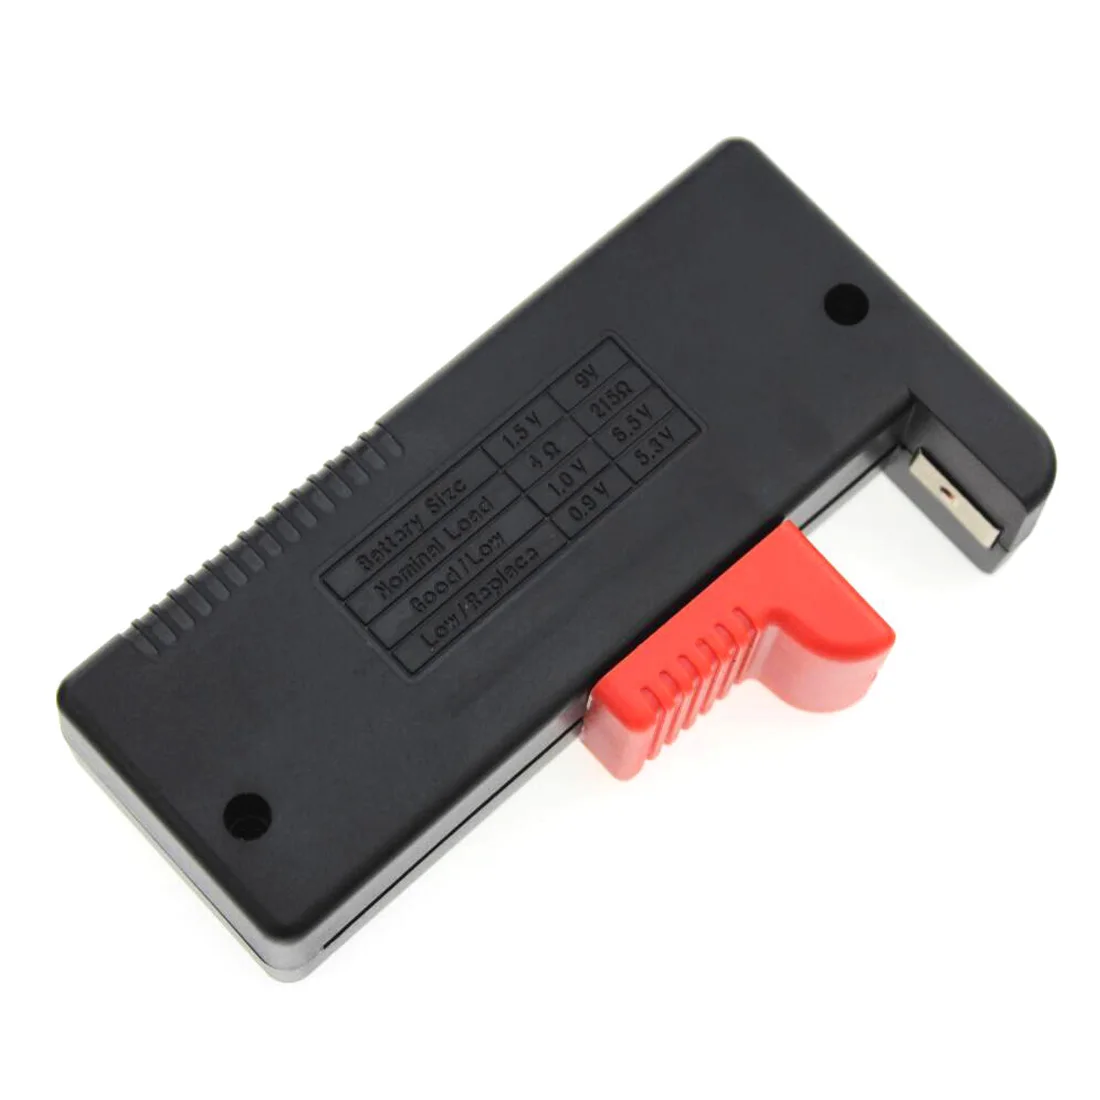 Цифровой тестер емкости батареи BT-168D тестер батареи Проверьте уровень мощности для аккумуляторов от 1,5 В до 9 в